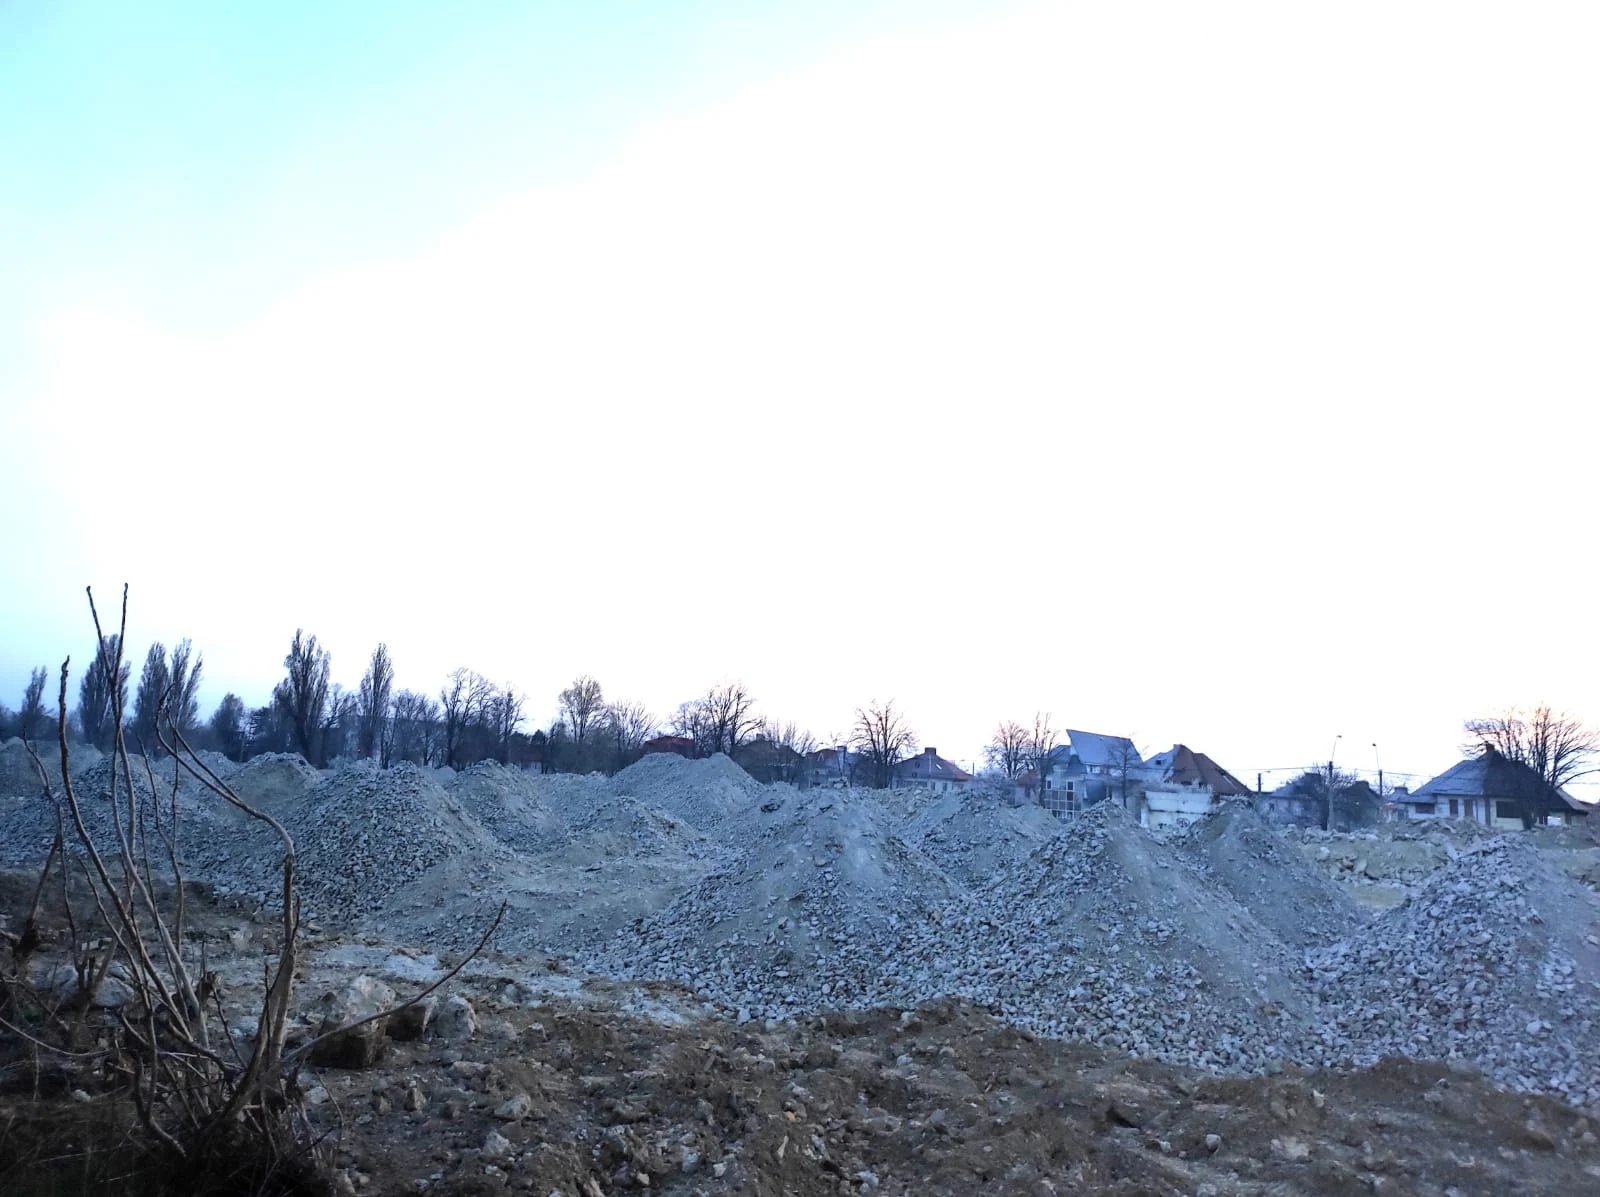 Ruinele fostei fabrici demolate și transformate în munți pietriș FOTO: C.Mazilu